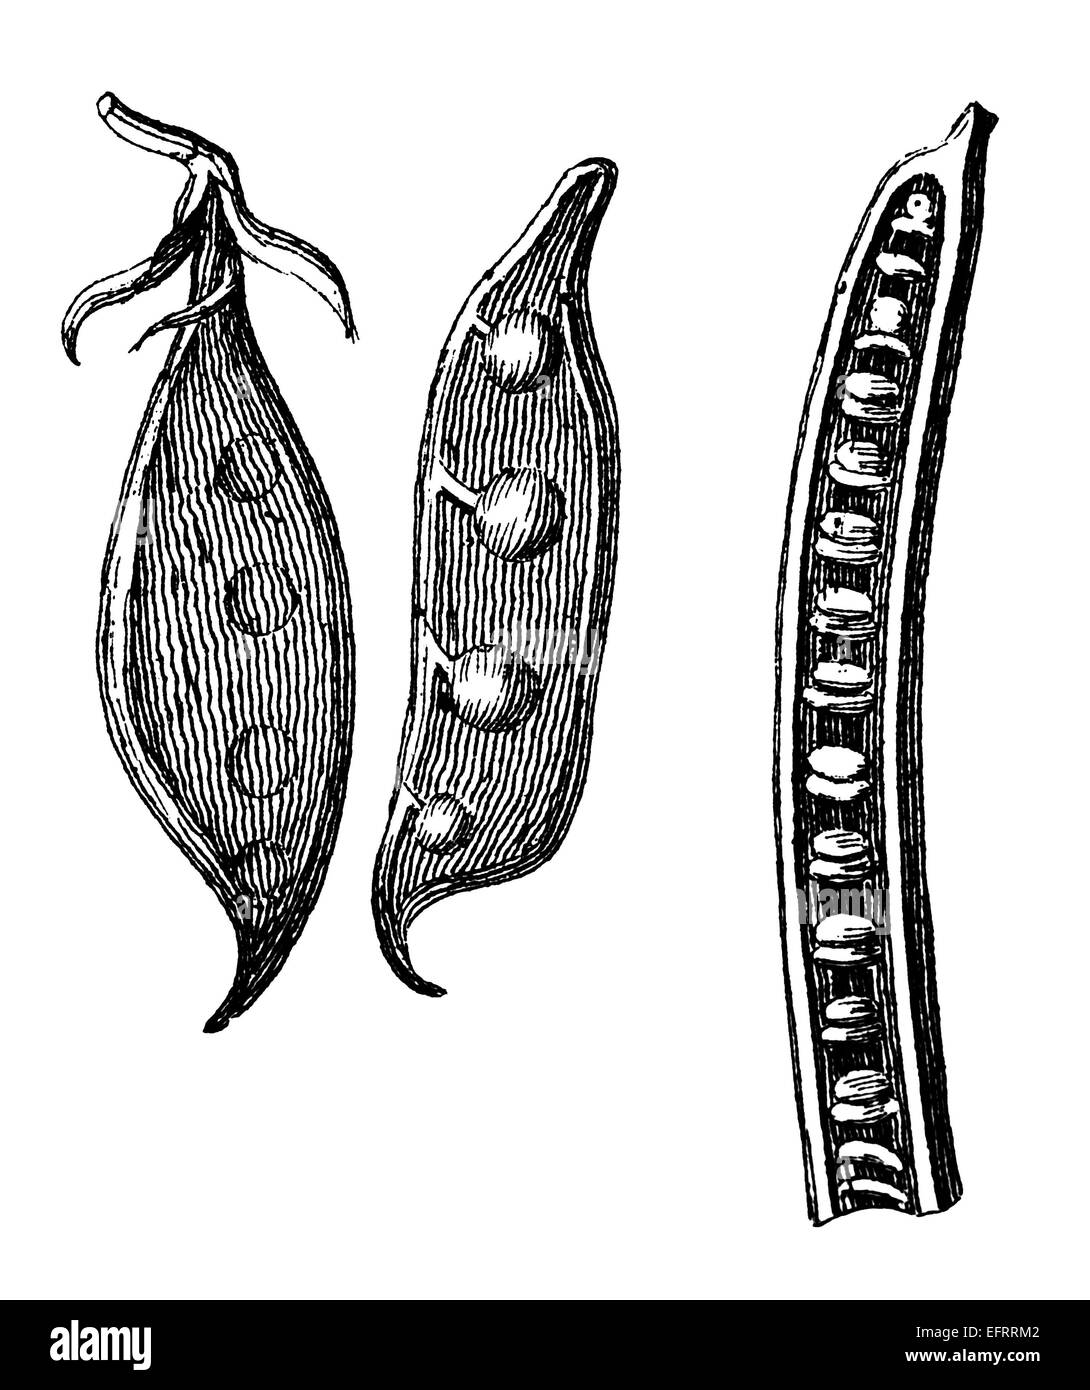 Incisione in stile vittoriano di pisello selvatico cialde. Restaurata digitalmente immagine da una metà del XIX secolo enciclopedia. Foto Stock